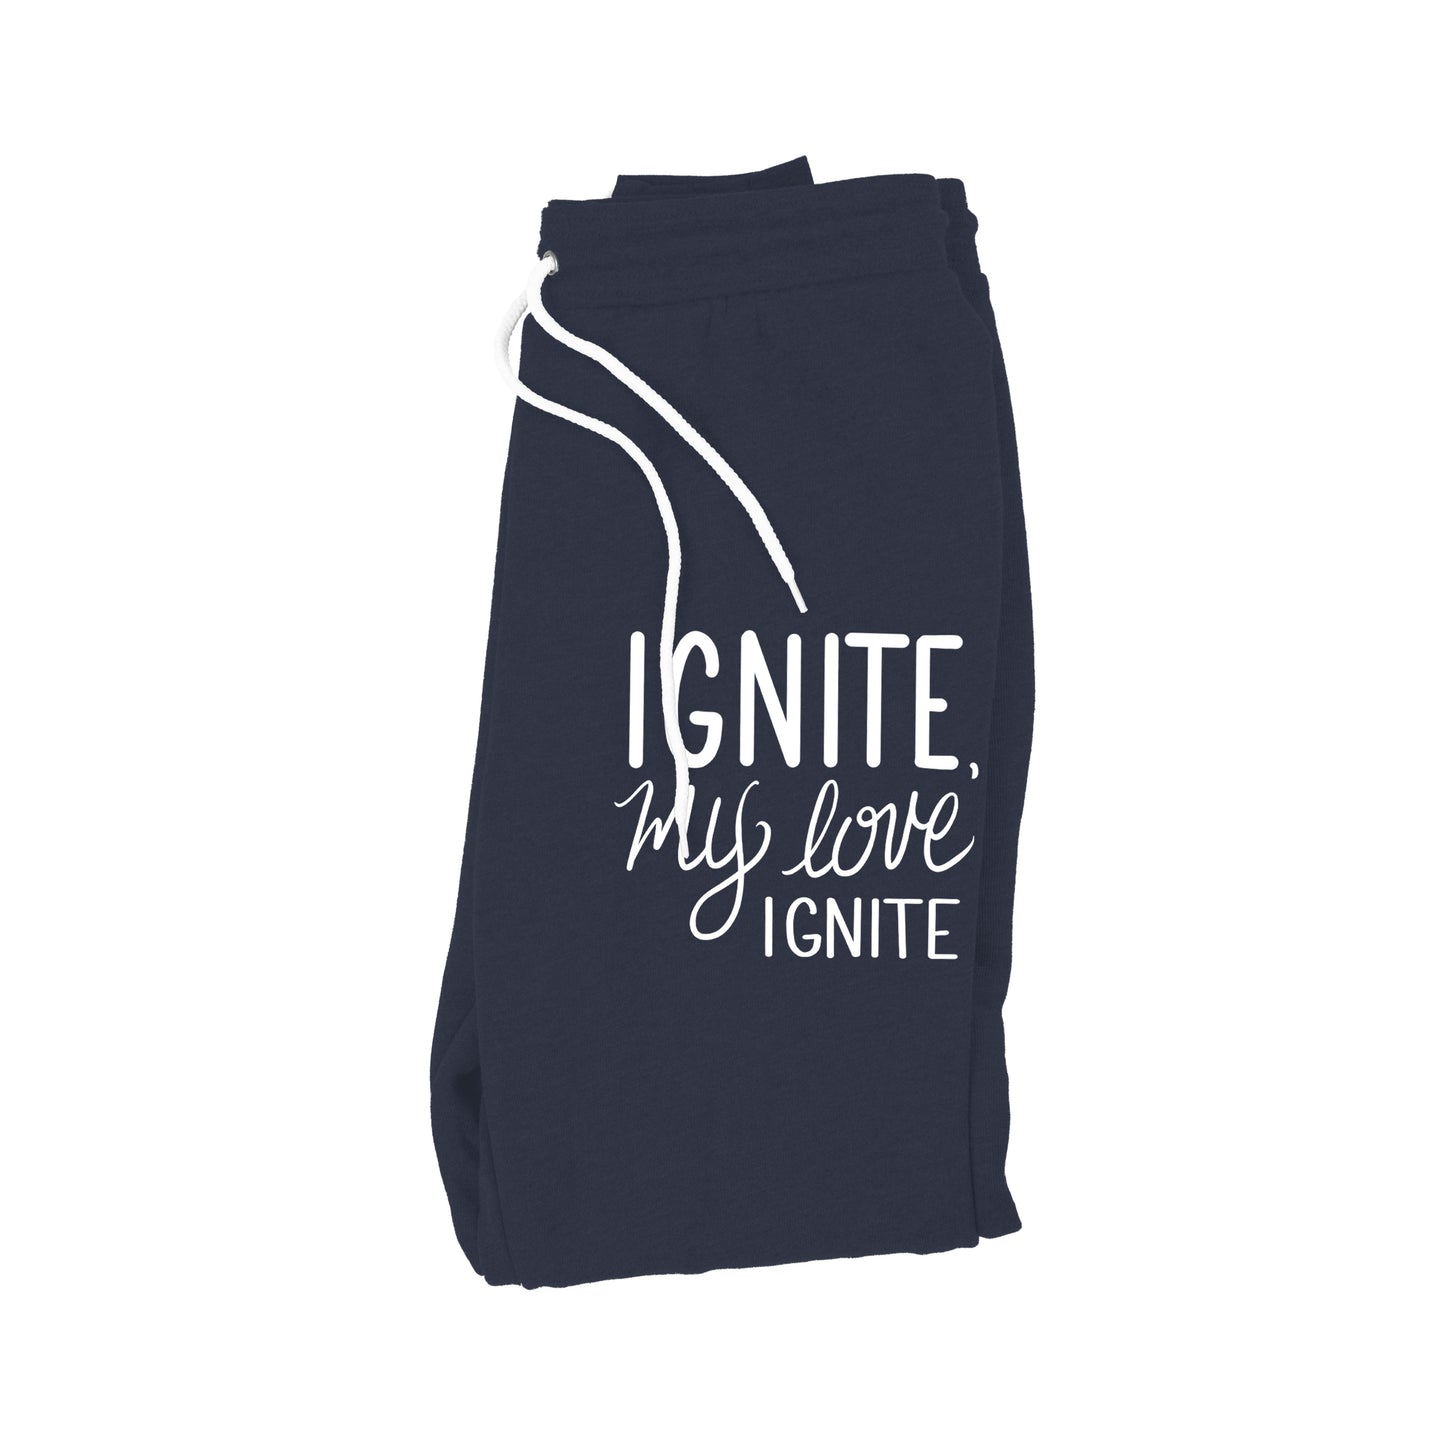 Ignite - Jogger